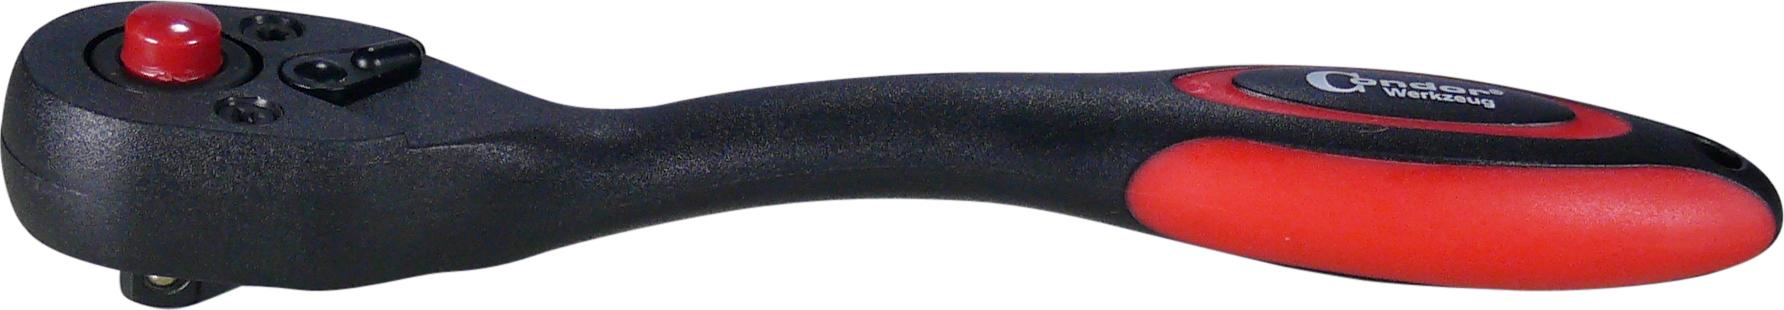 Račňa, 1/4", čierna ergonomický tvar, 145 mm